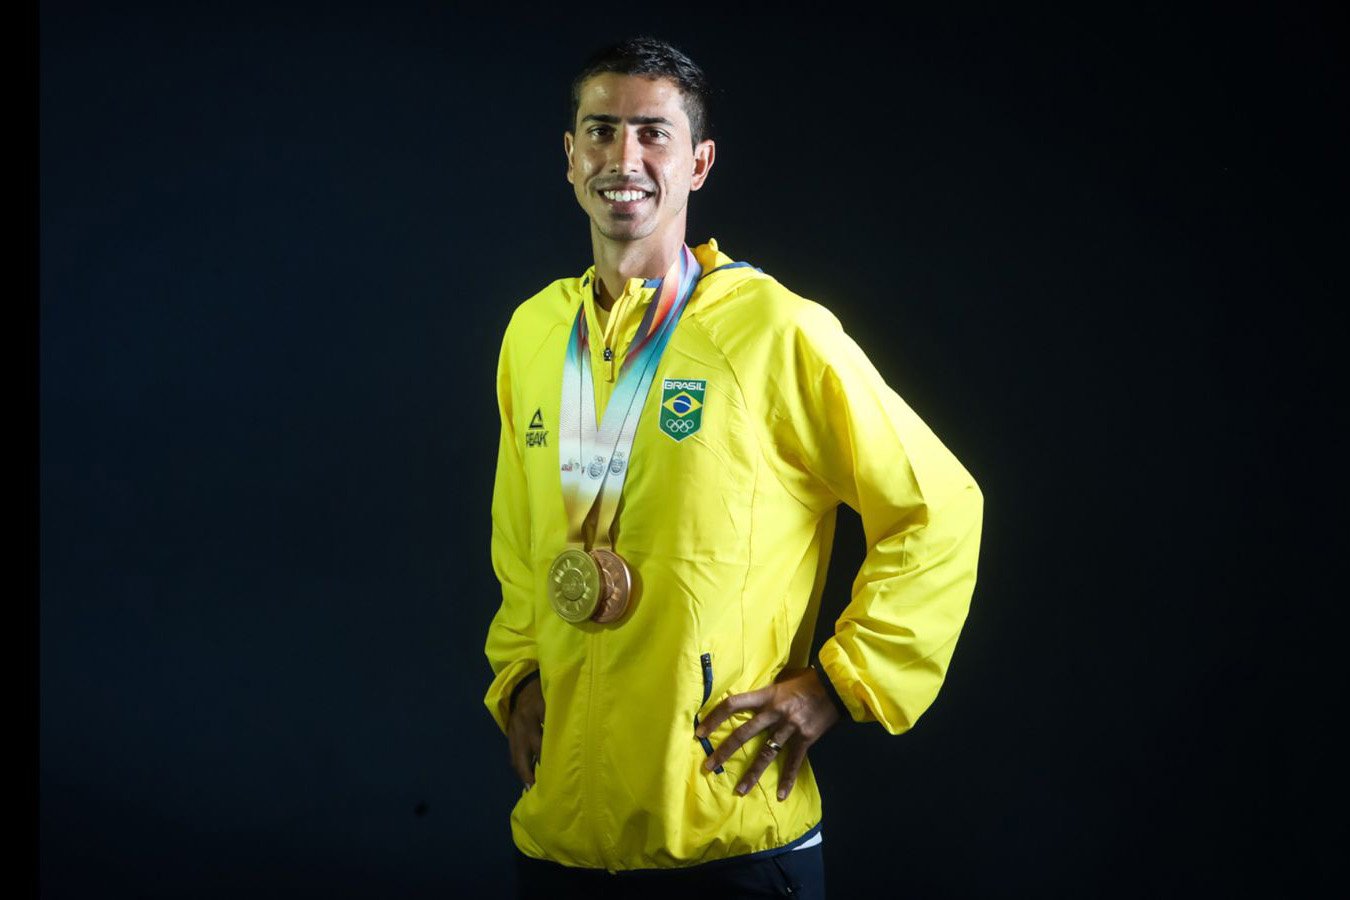 Morador de Sobradinho chega no Mundial de Atletismo com chance de medalha